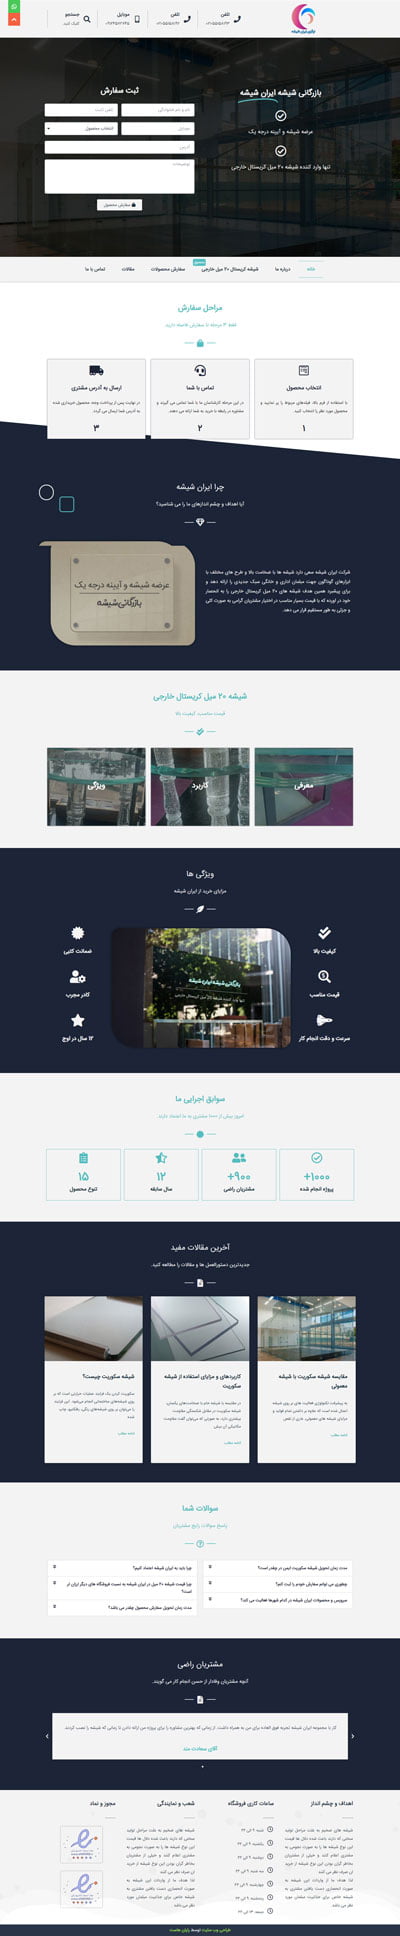 طراحی سایت فروشگاه ایران شیشه